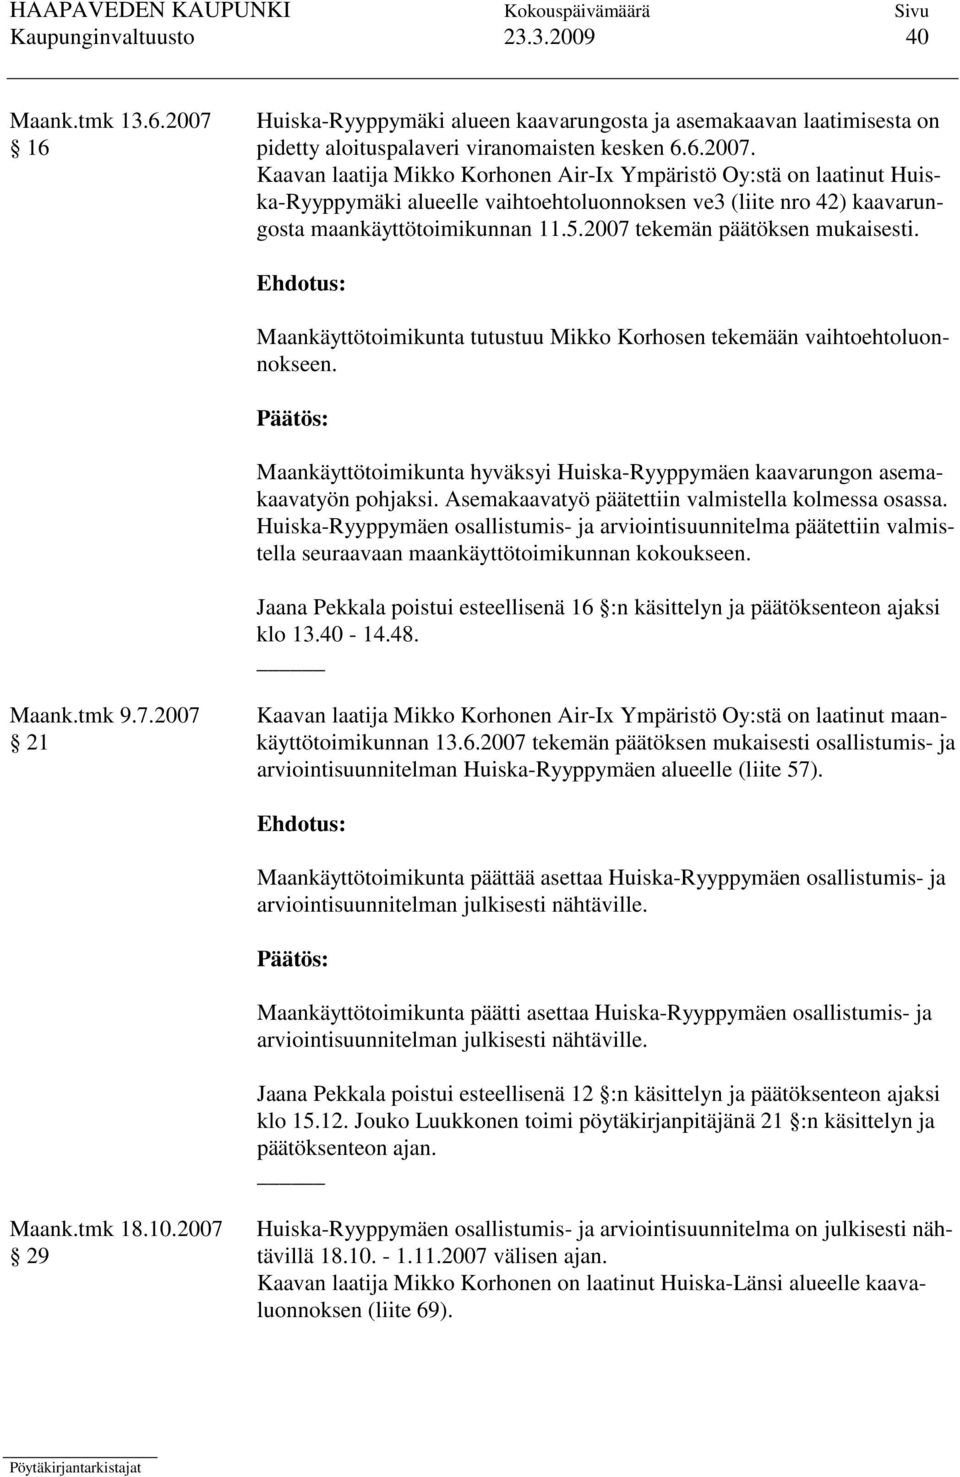 Kaavan laatija Mikko Korhonen Air-Ix Ympäristö Oy:stä on laatinut Huiska-Ryyppymäki alueelle vaihtoehtoluonnoksen ve3 (liite nro 42) kaavarungosta maankäyttötoimikunnan 11.5.